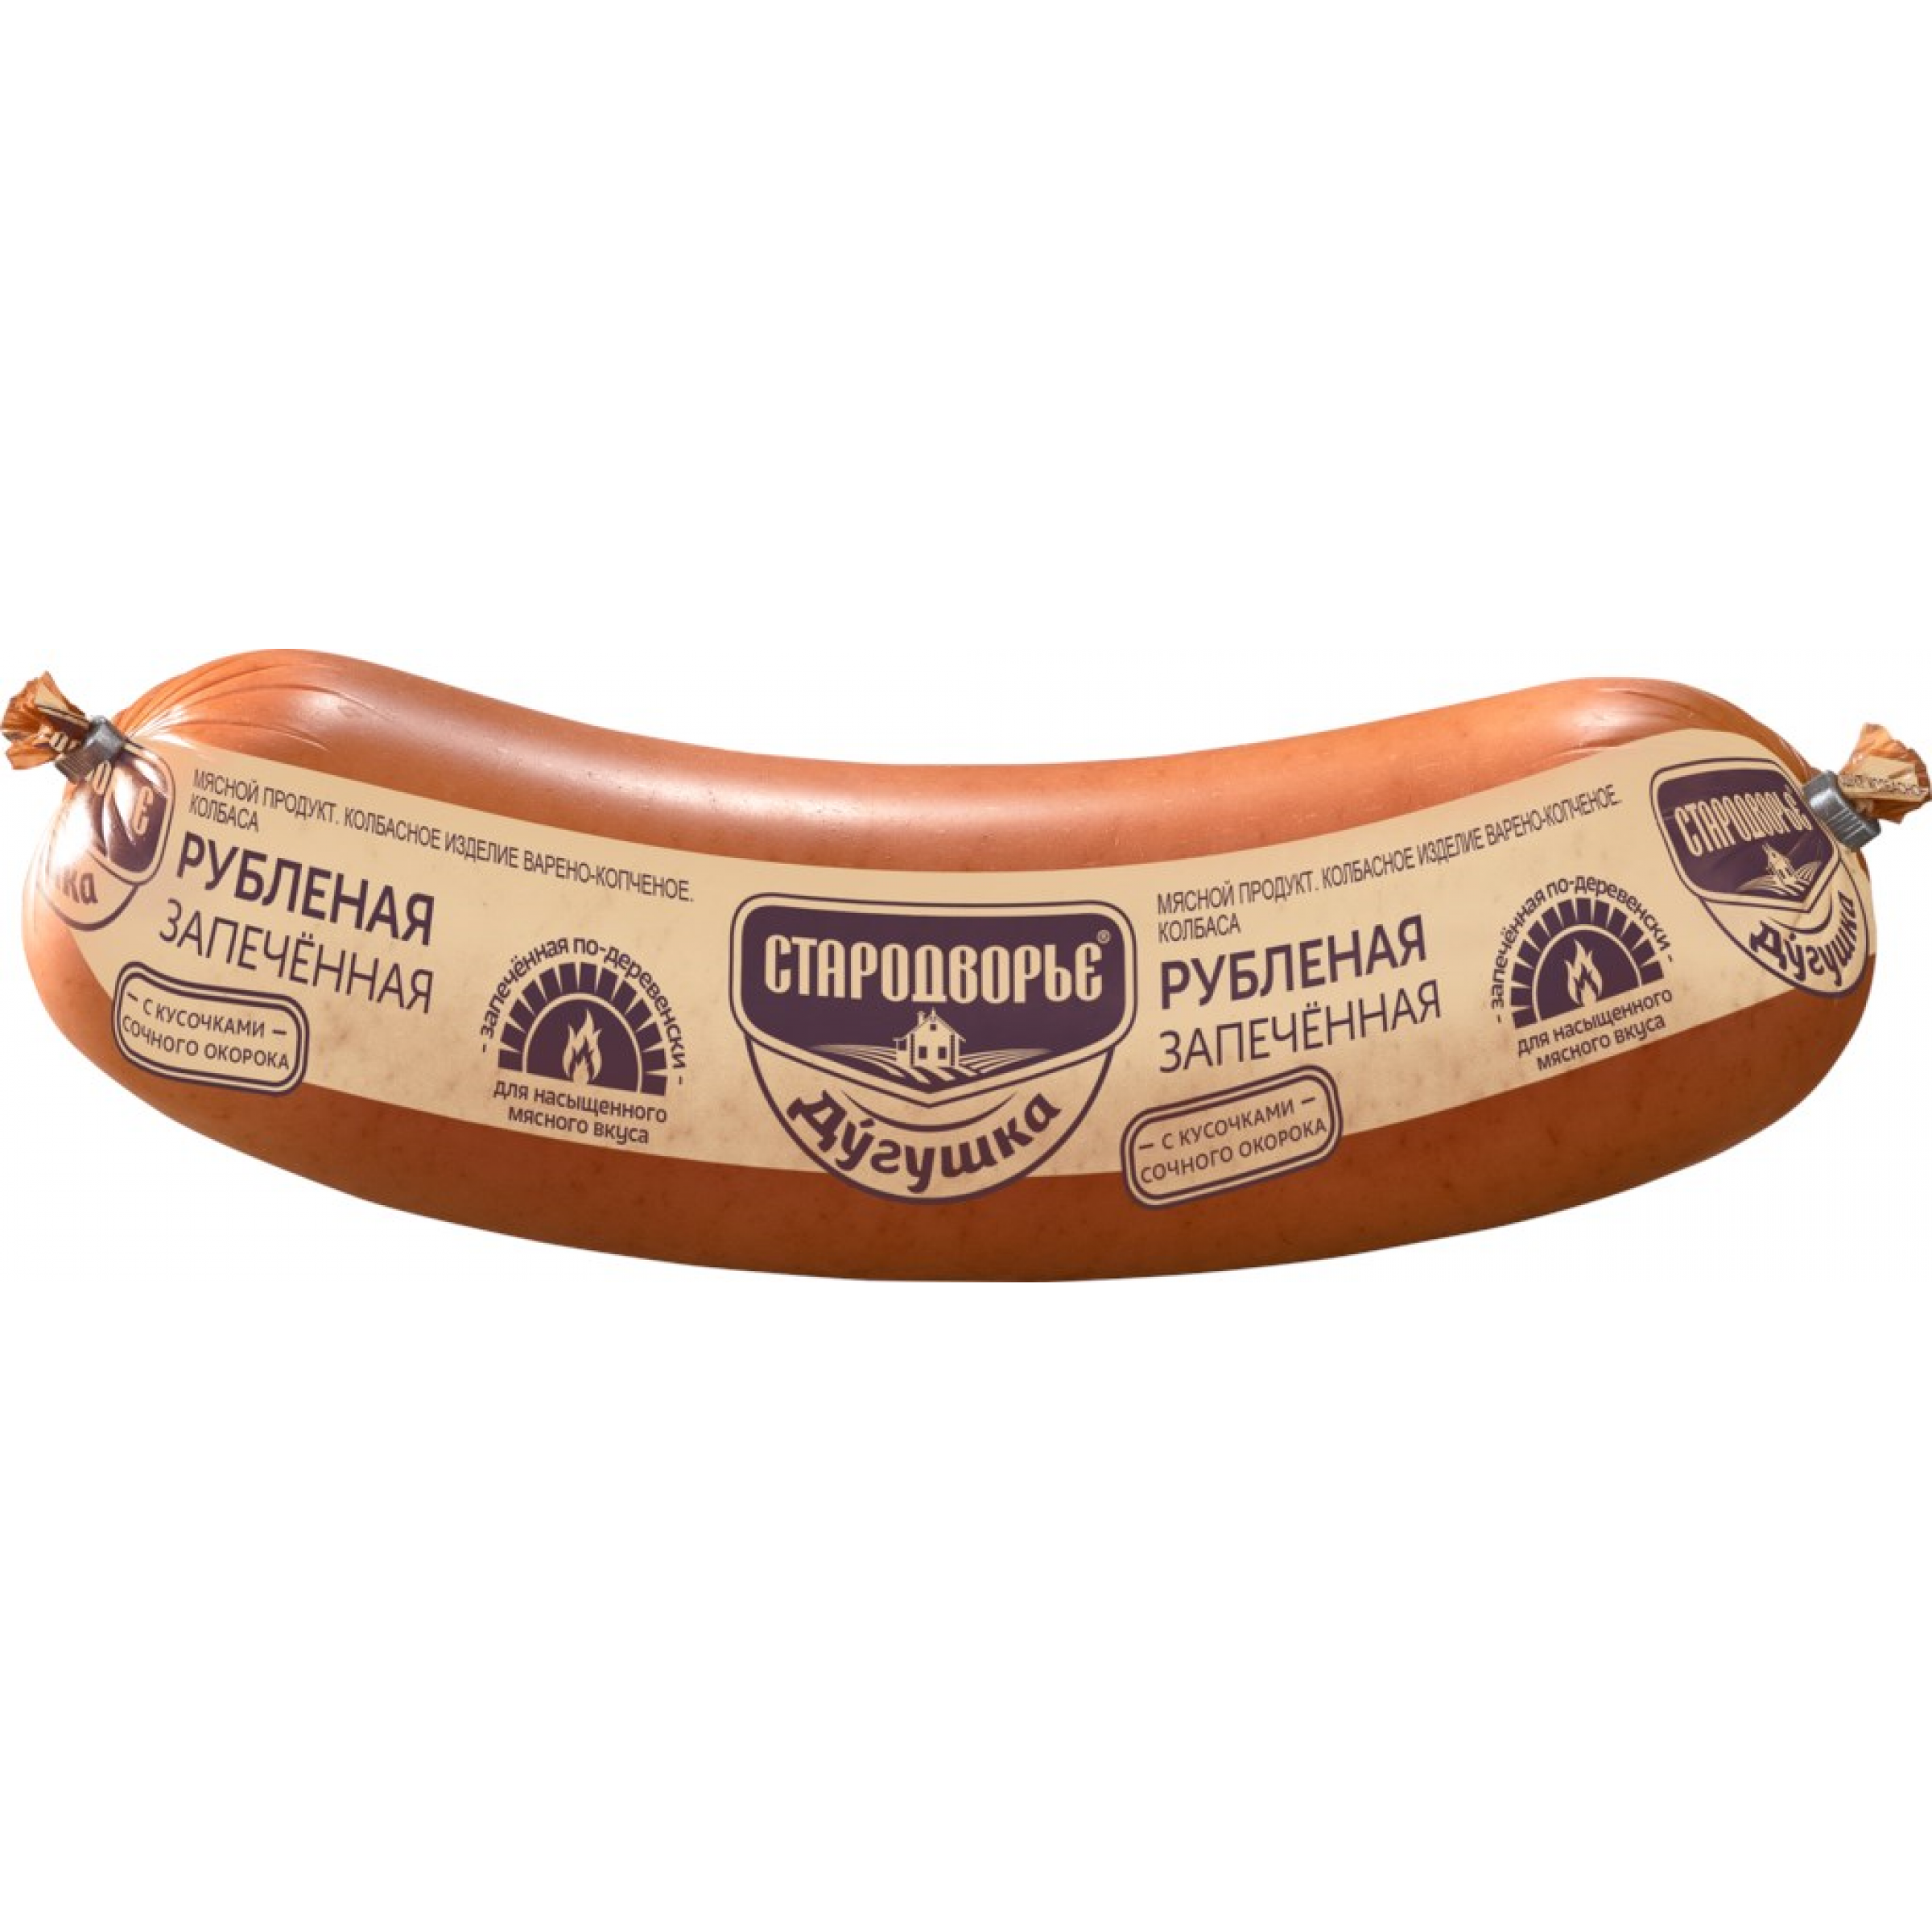 Варено-копченая колбаса Рубленая Дугушка (средний вес: 850 г)